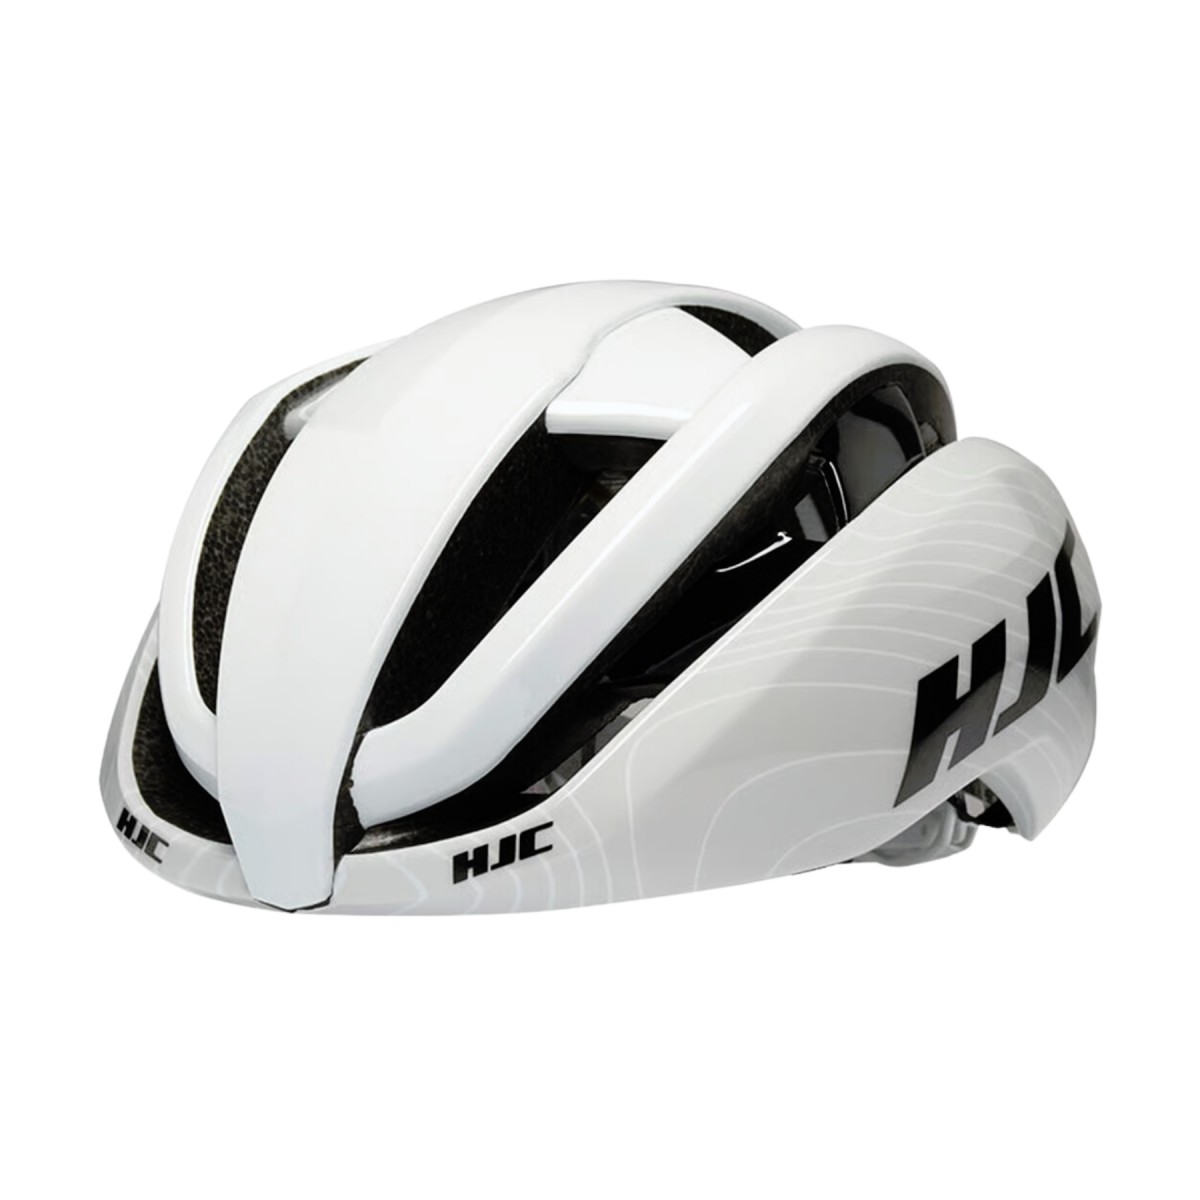 und 2  günstig Kaufen-HJC Ibex 2.0 Helm Weiß Grau, Größe L. HJC Ibex 2.0 Helm Weiß Grau, Größe L <![CDATA[HJC Ibex 2.0 Helm Weiß Grau
 Der HJC Ibex 2.0 Helm ist ein ultraleichter und bequemer Helm, der für optimale Belüftung sorgt.